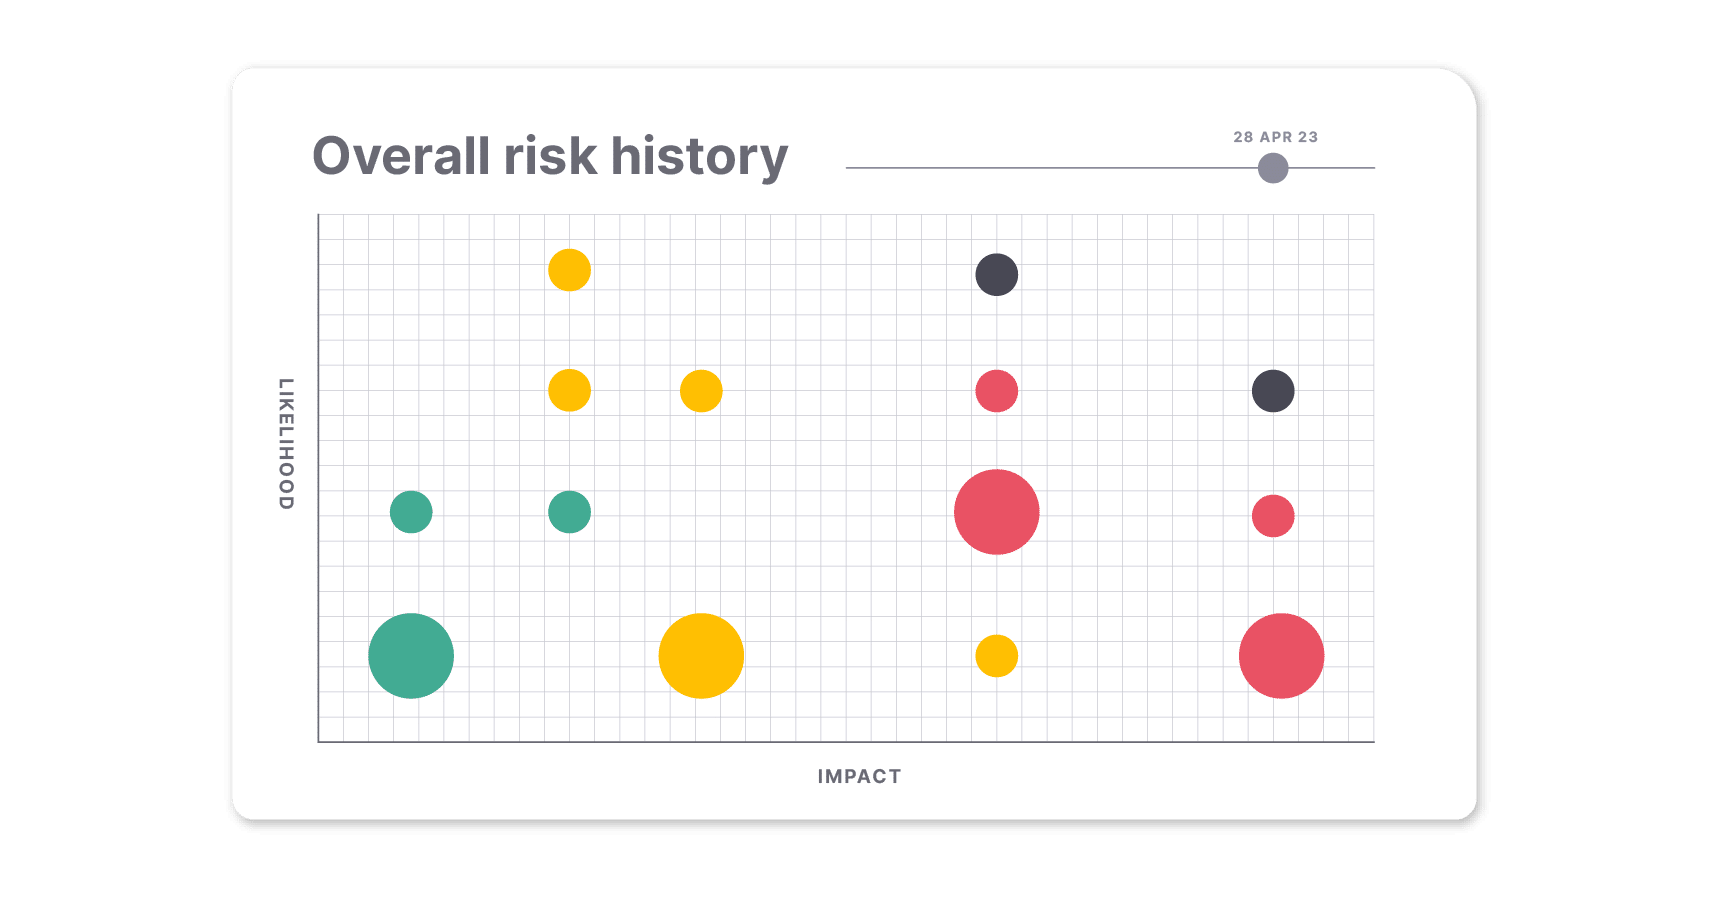 Spor hvordan risikoene dine har utviklet seg over tid med grafen for samlet risikohistorie